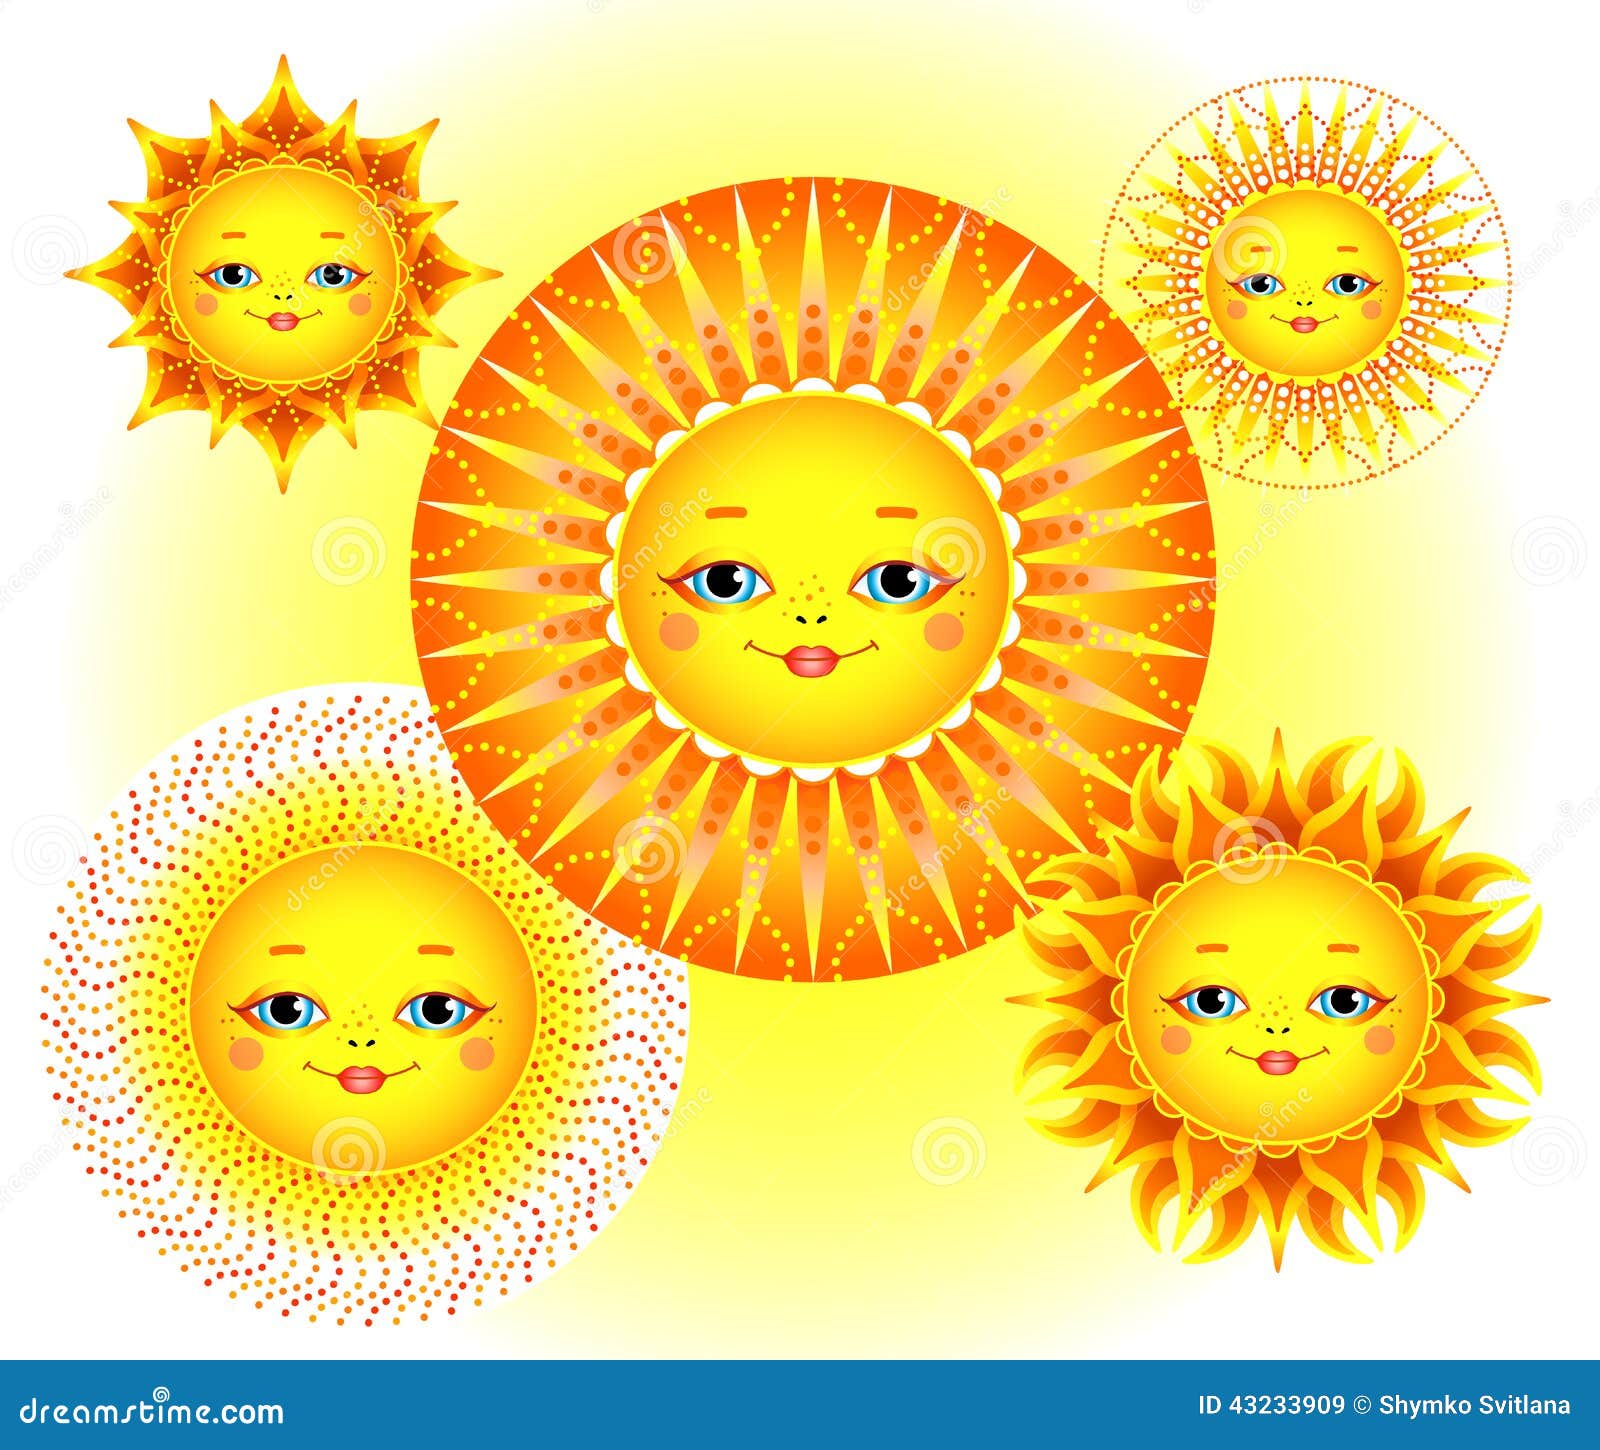 Солнышко масленица картинка для детей. Солнышко на Масленицу. Солнце на Масленицу. Солнце веселое. Изображение солнца на Масленицу.